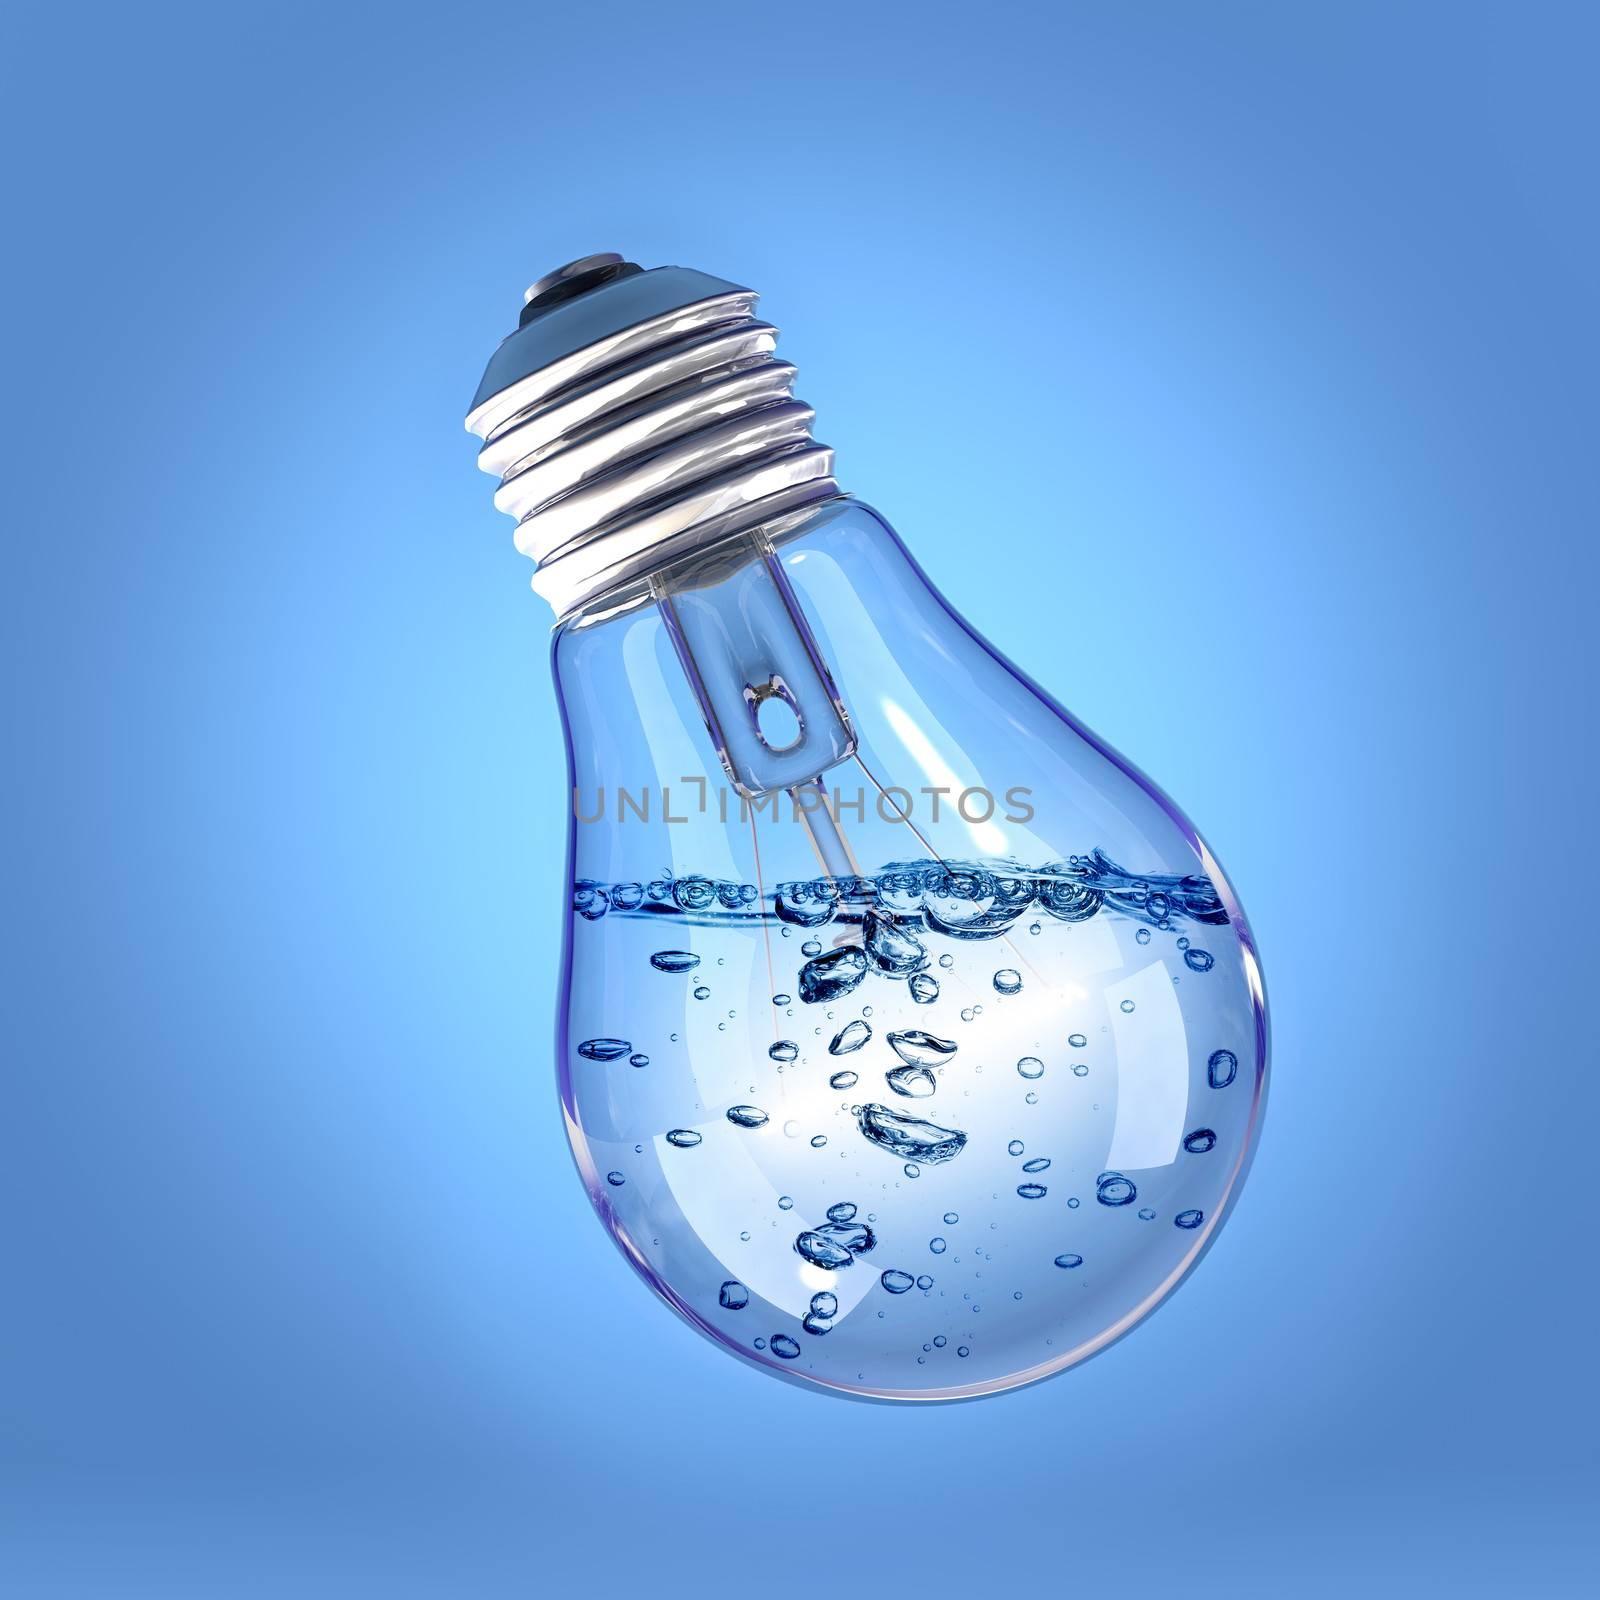 Liquid in a light bulb by dynamicfoto